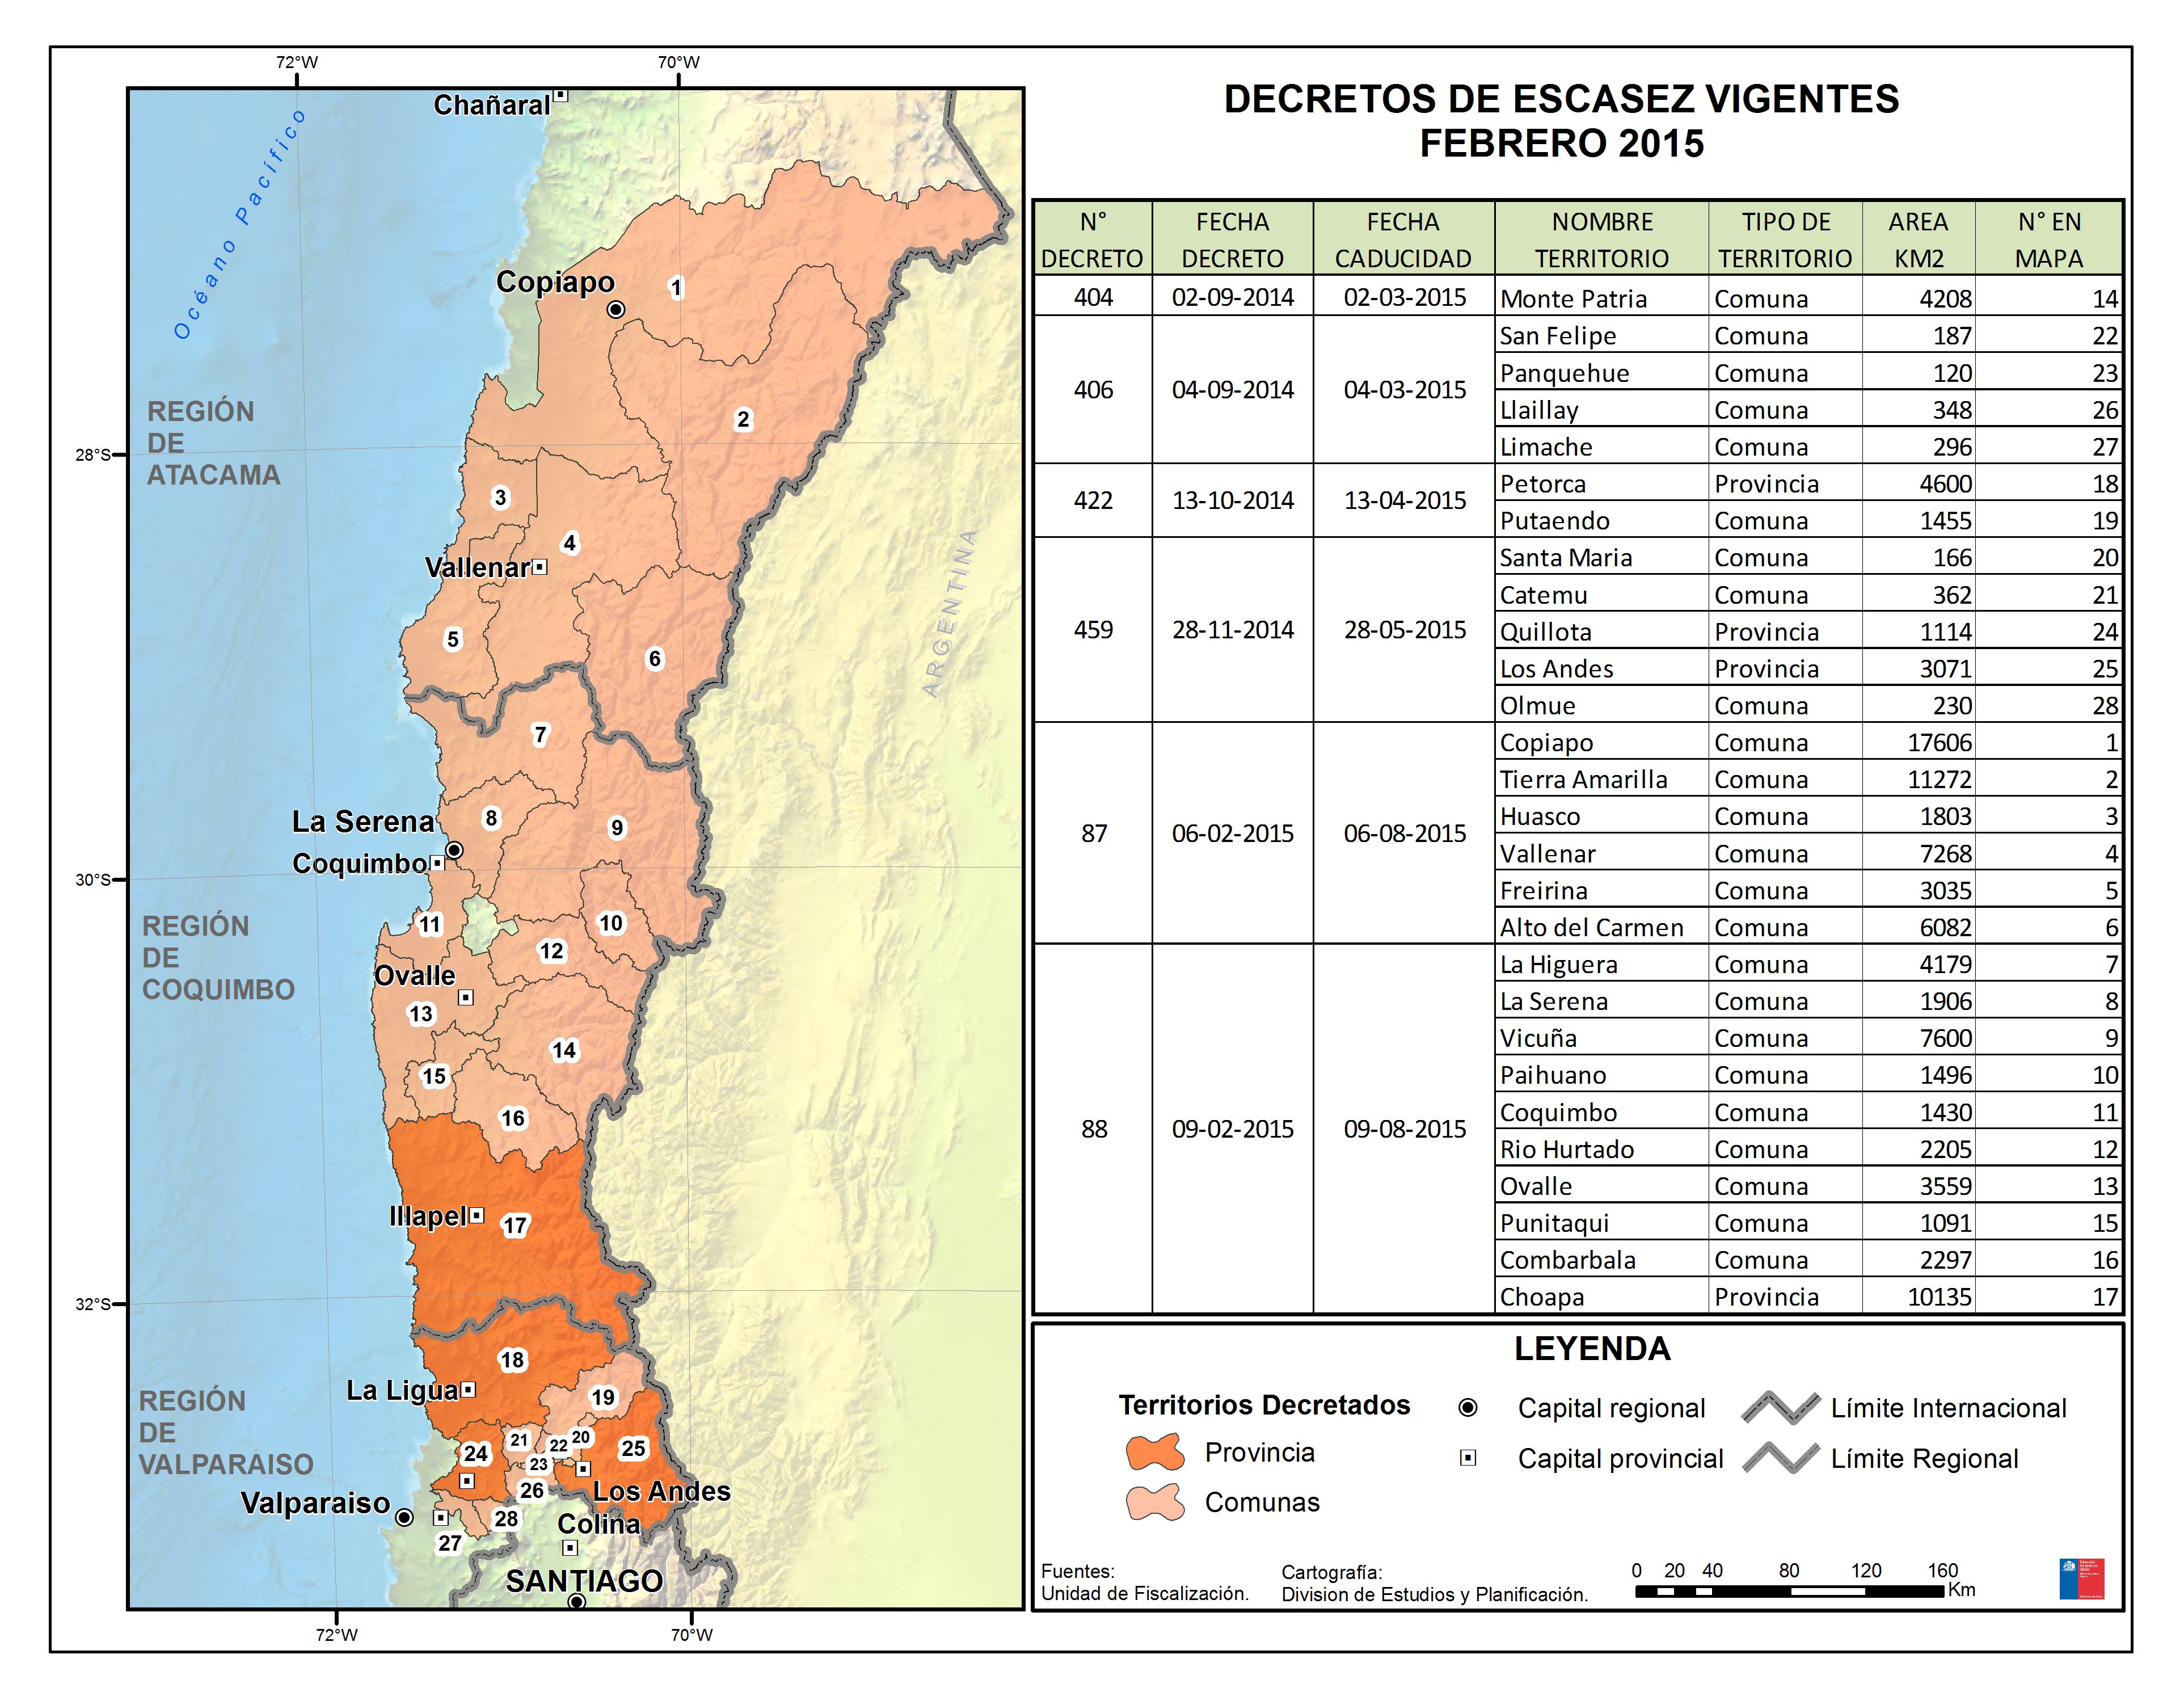 Ministerio de Obras Públicas Decreta Escasez Hídrica en regiones de Atacama y Coquimbo